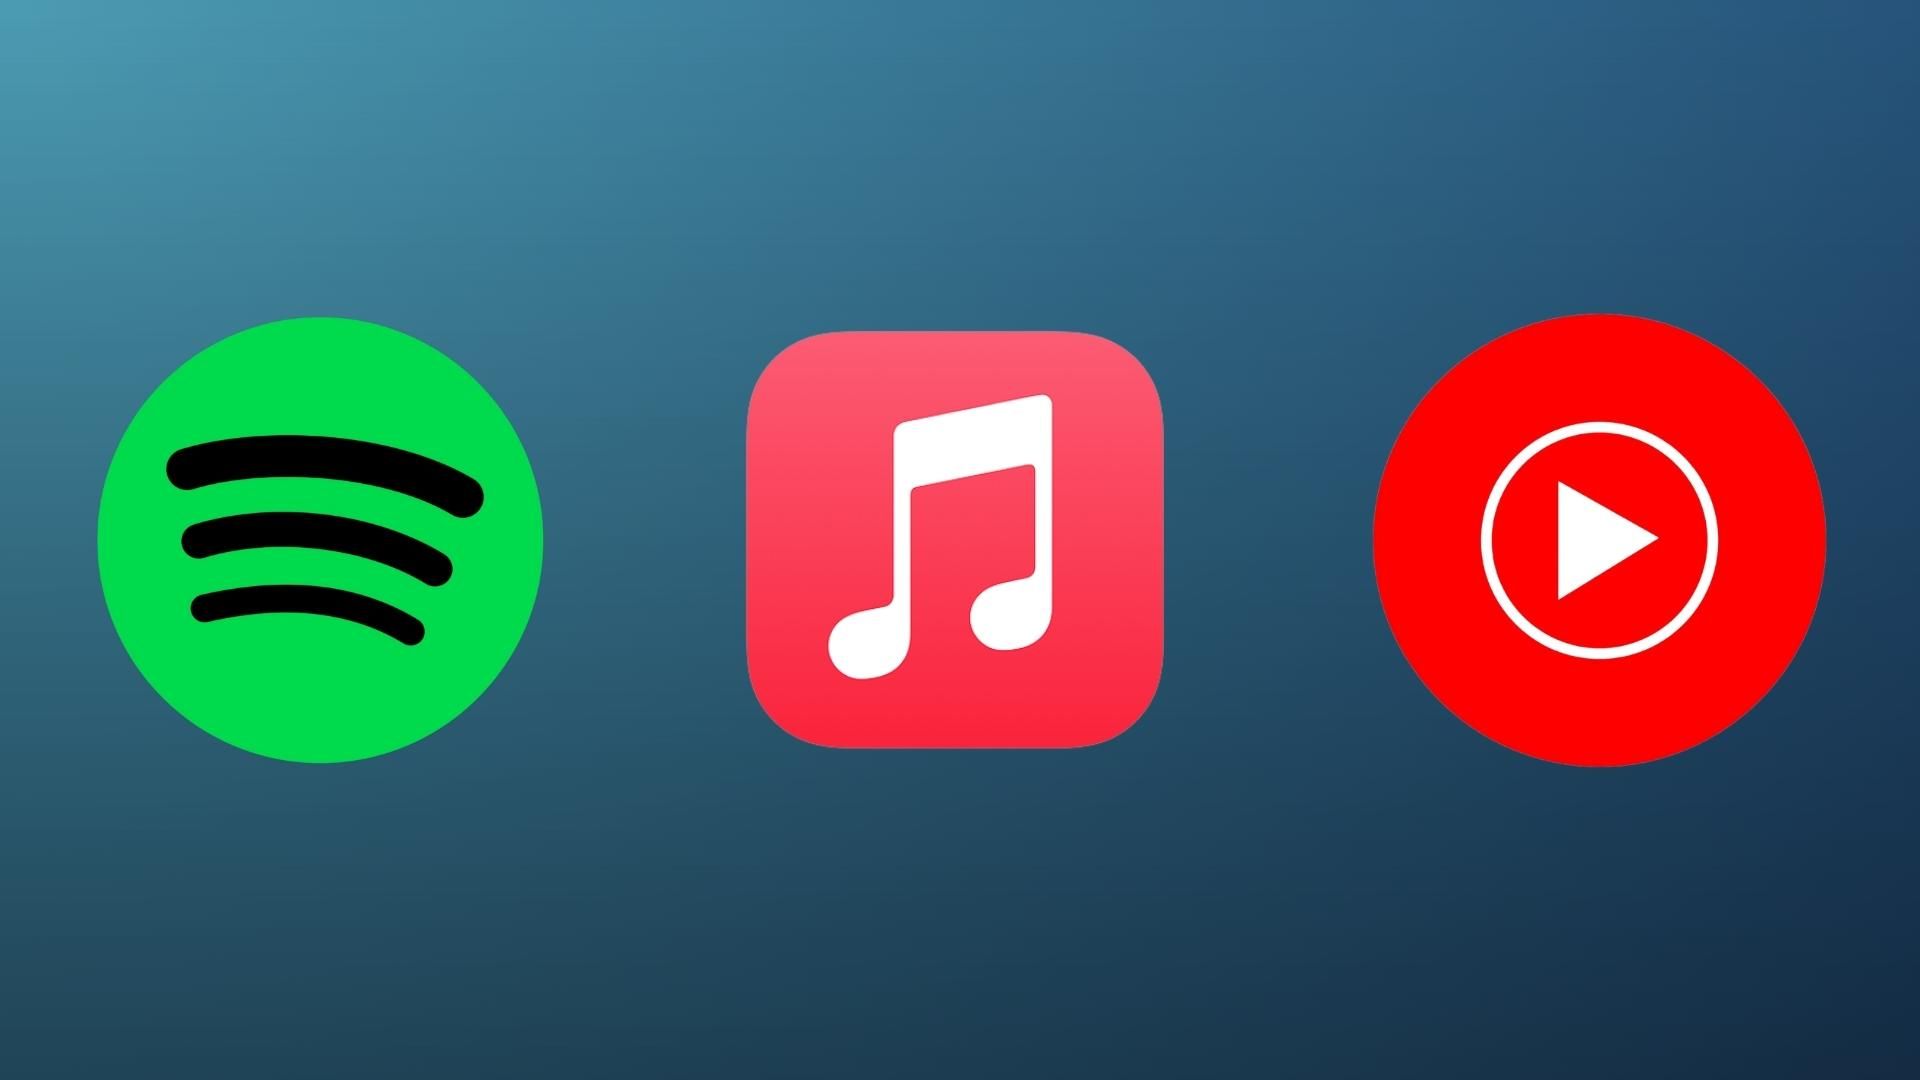 Spotify vs Apple Music vs YouTube